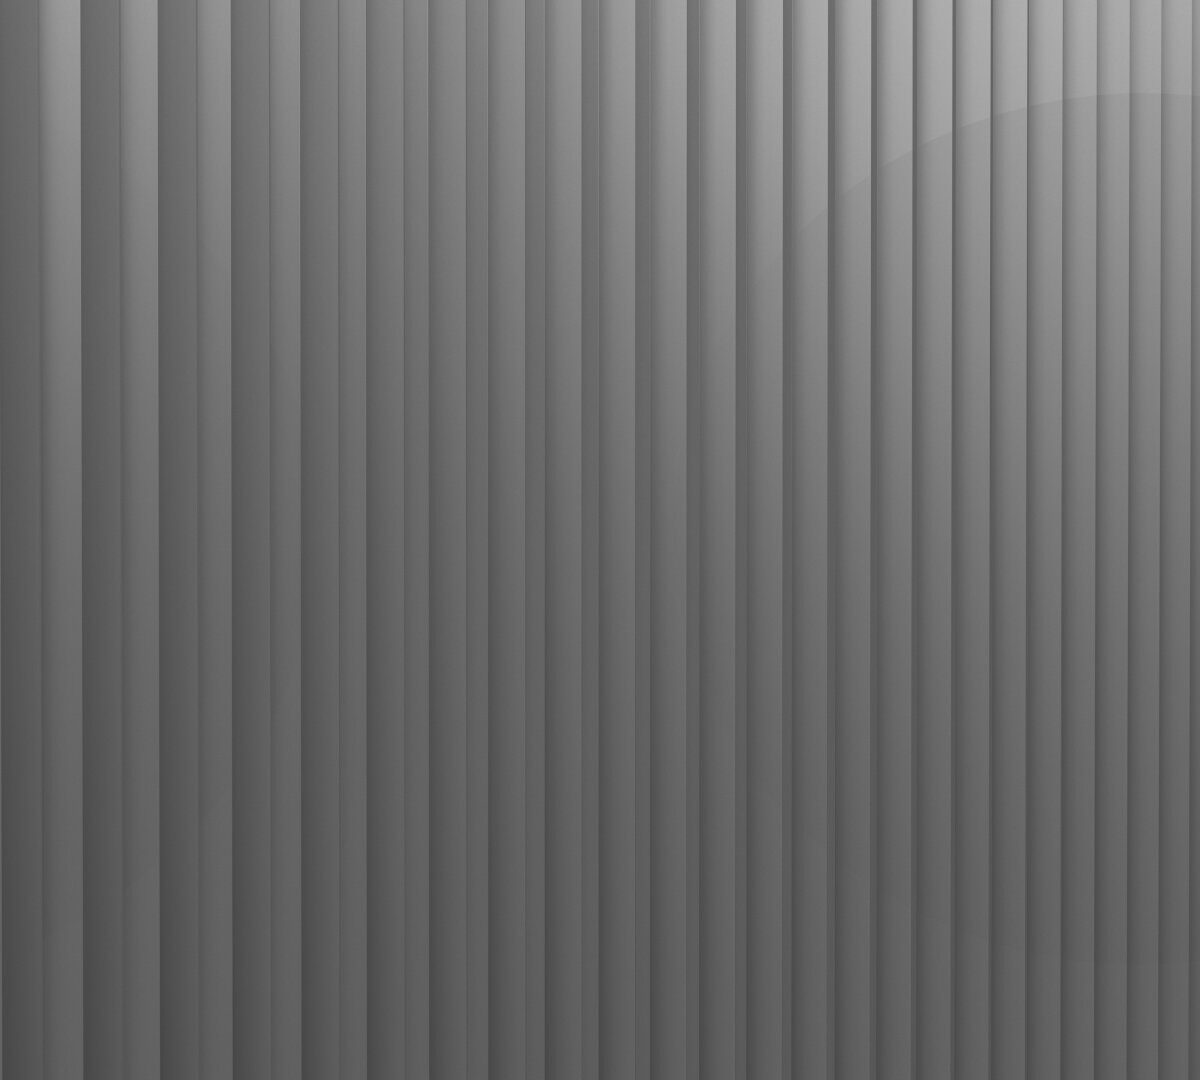 Aluminio - 103405 Lama Falkit® Peine de los Vientos Vista frontal vertical perspectiva